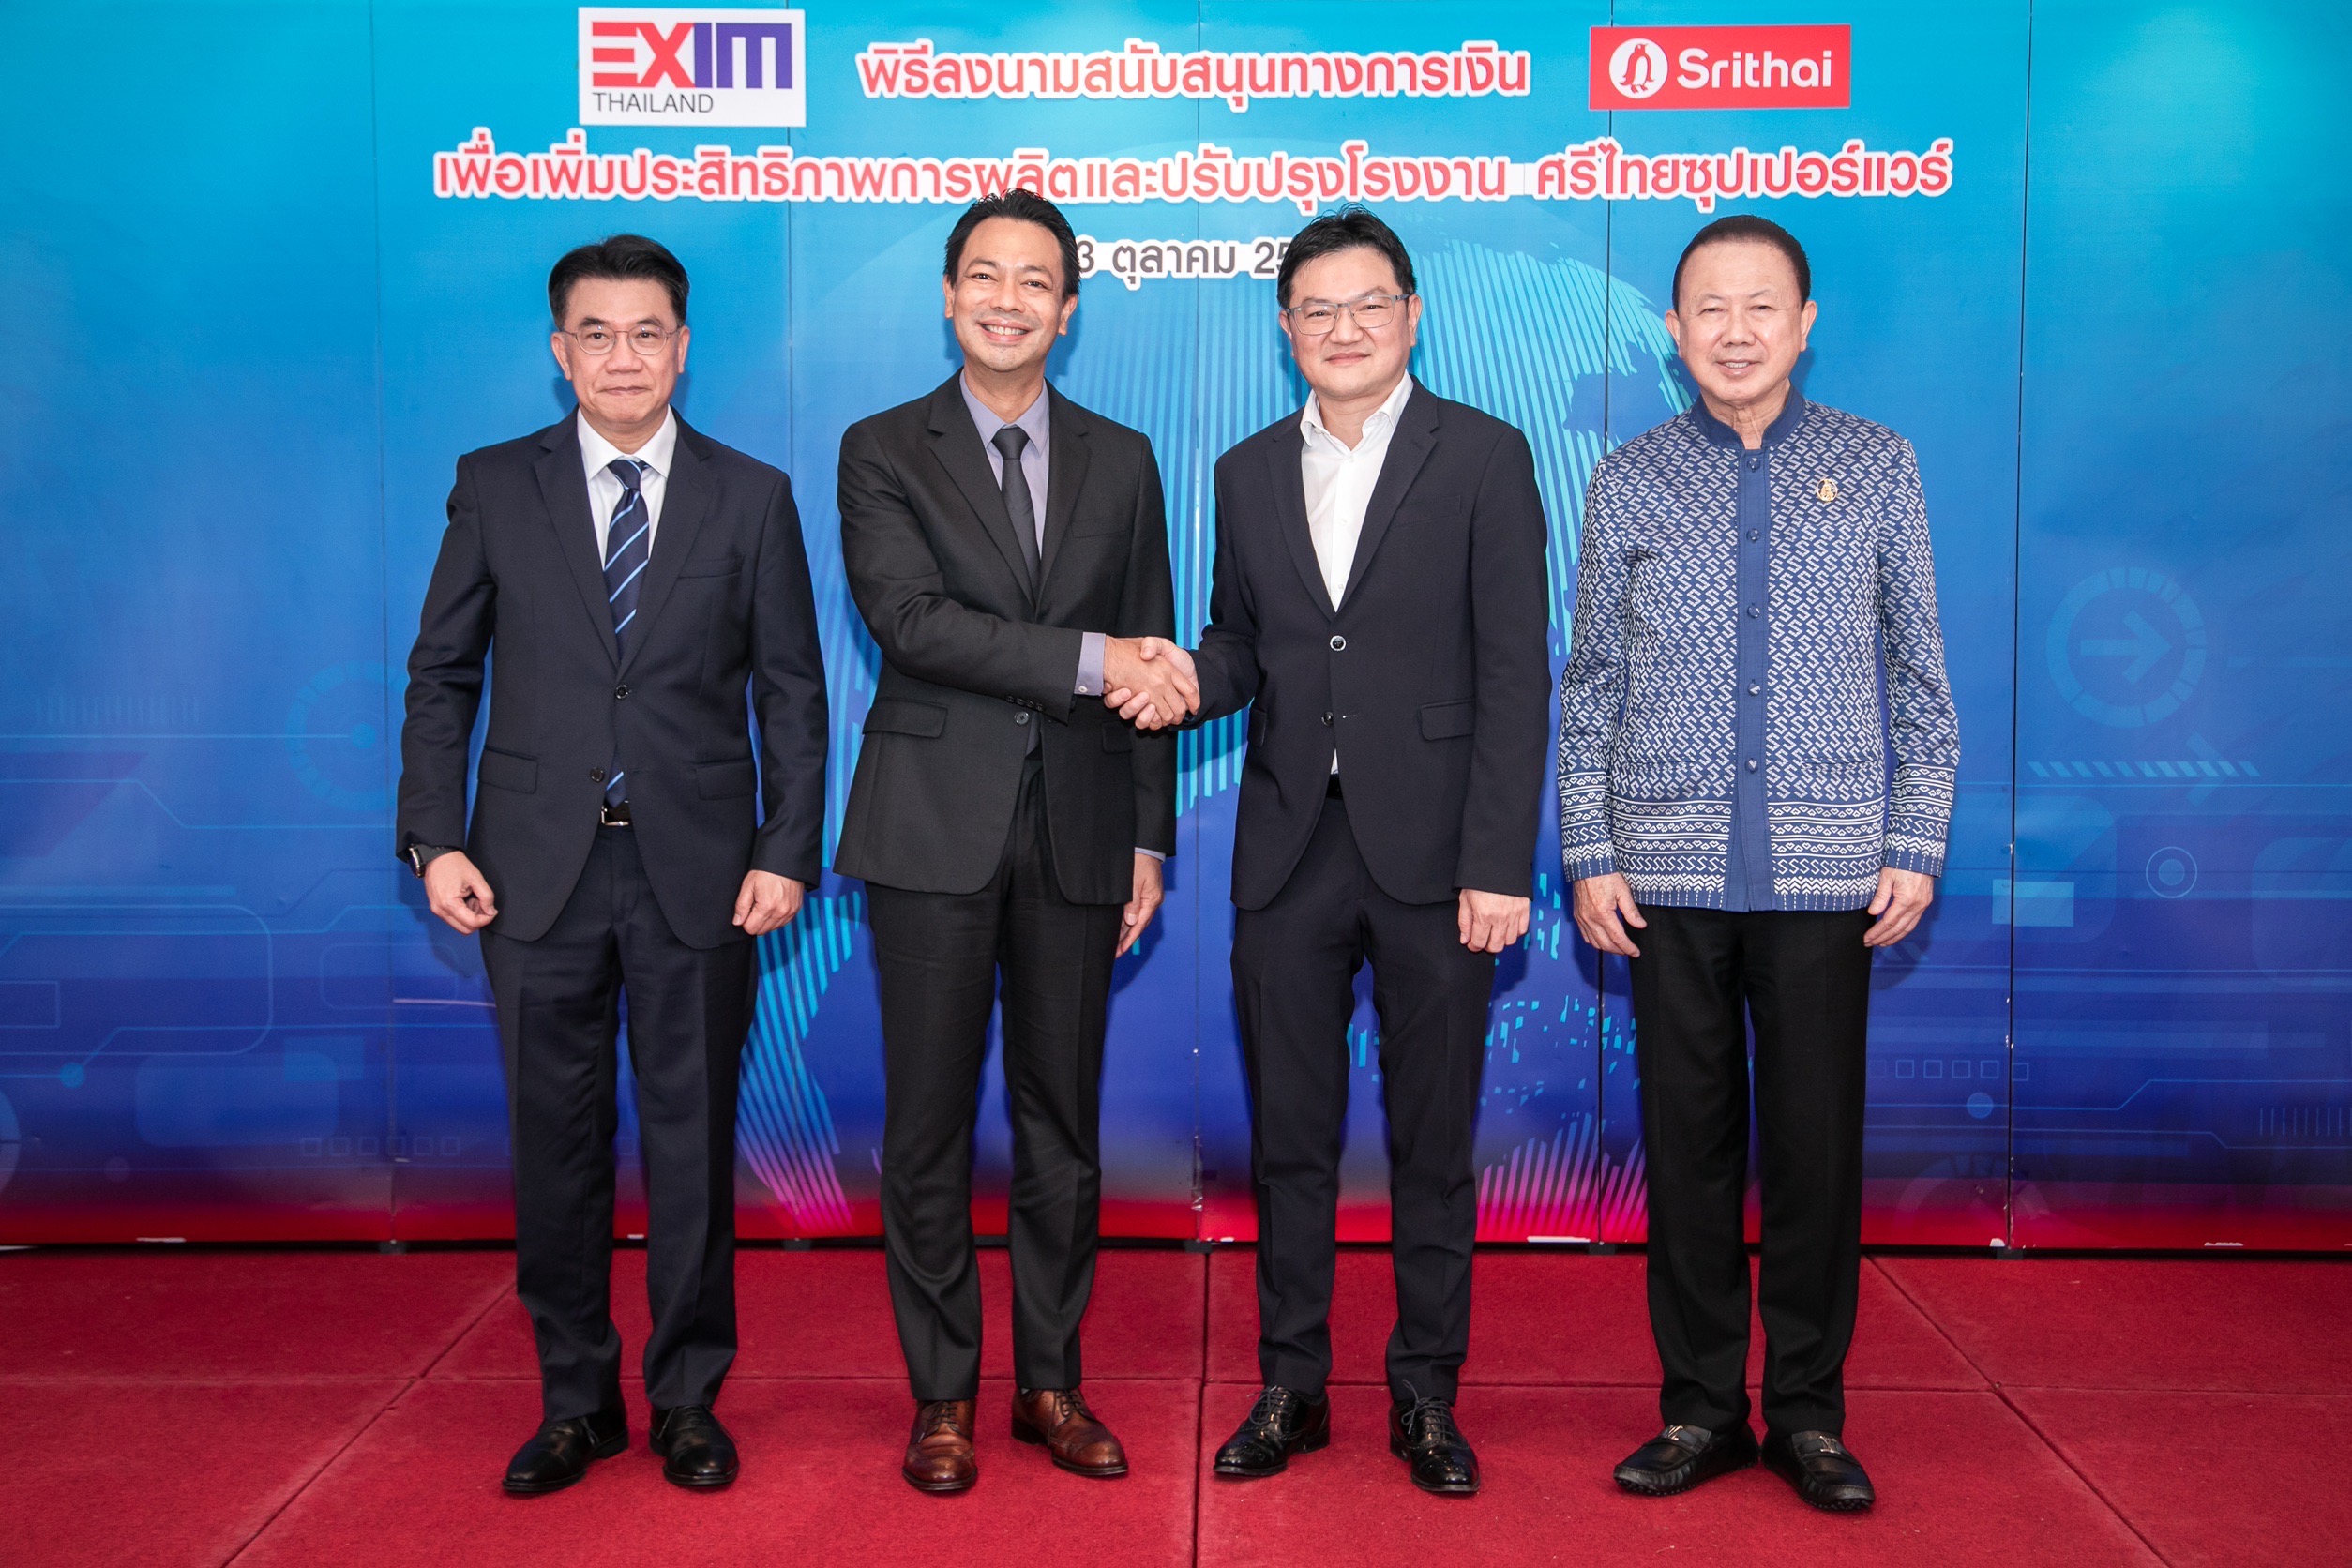 EXIM BANK สนับสนุนศรีไทยซุปเปอร์แวร์ 220 ล้านบาท ปรับปรุงเครื่องจักรและโรงงานผลิตเพื่อยกระดับธุรกิจให้แข่งขันได้ในตลาดการค้าโลกยุค Next Normal